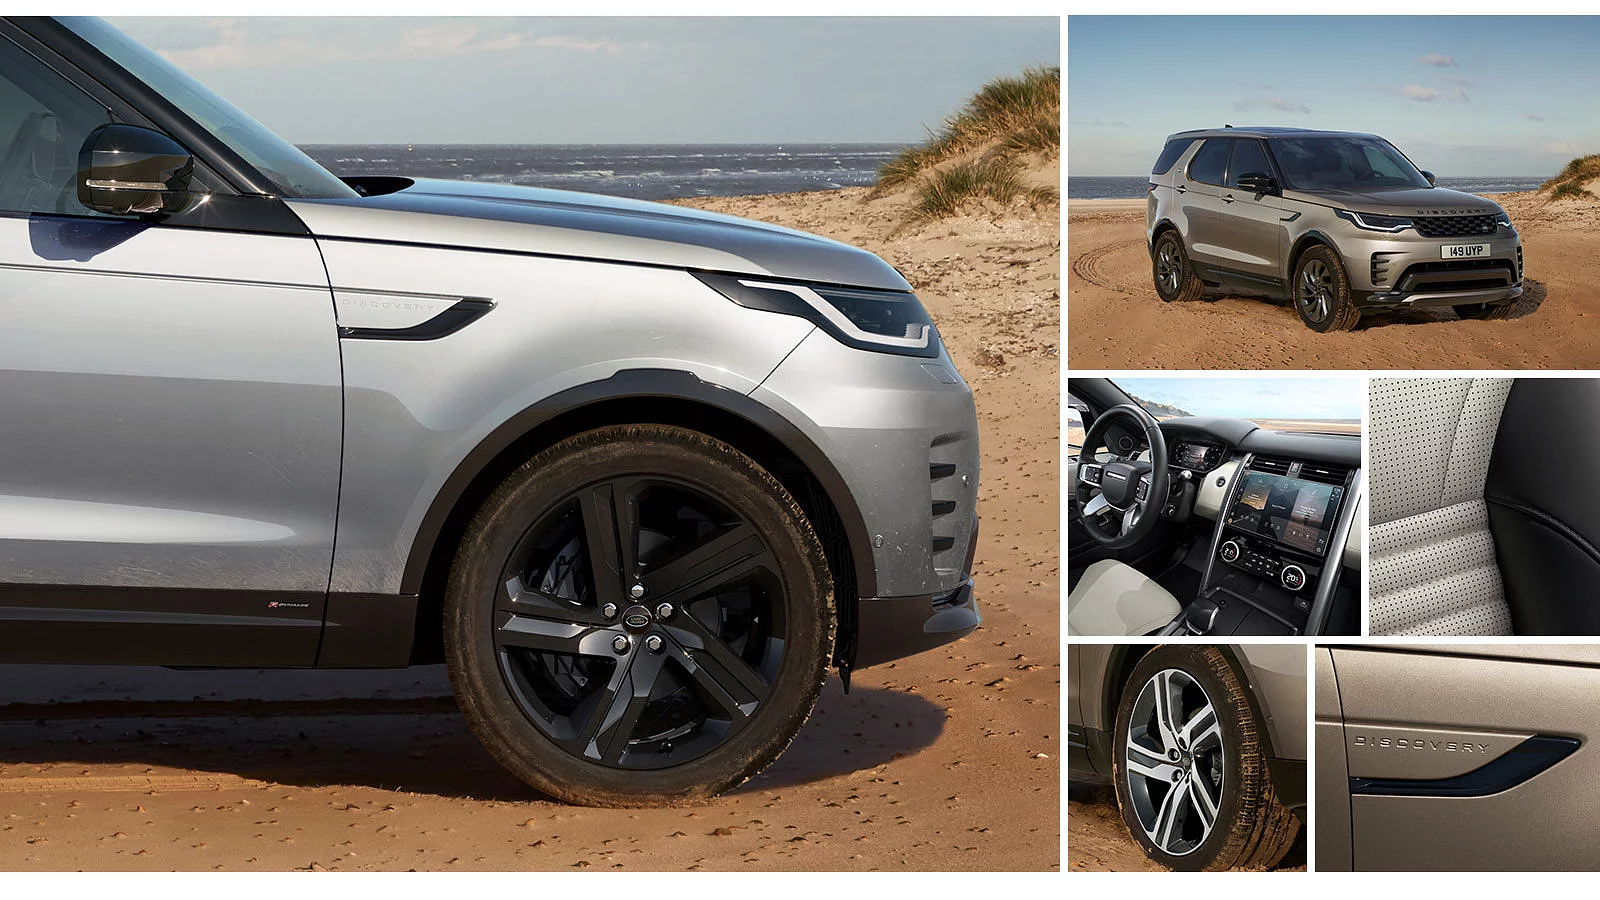 Diseña tu Land Rover ideal utilizando el configurador.